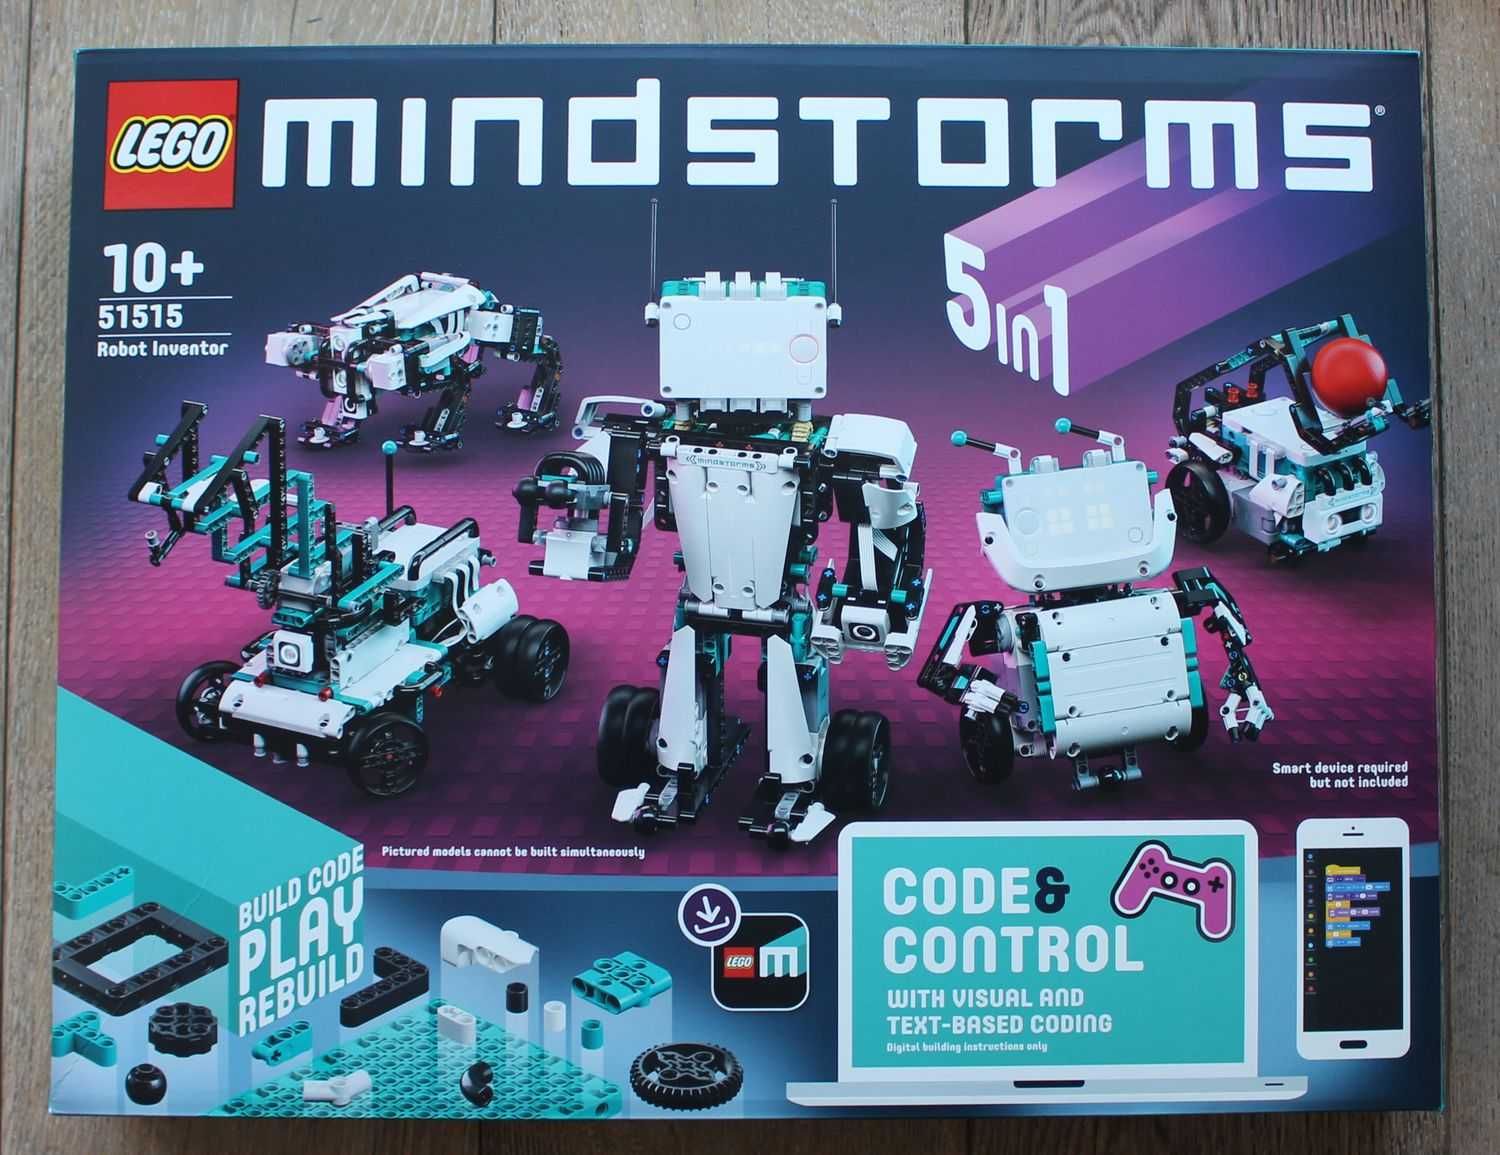 #nowe# Lego 51515 Mindstorms Wynalazca Robotów 5w1 wysyłka 0zł